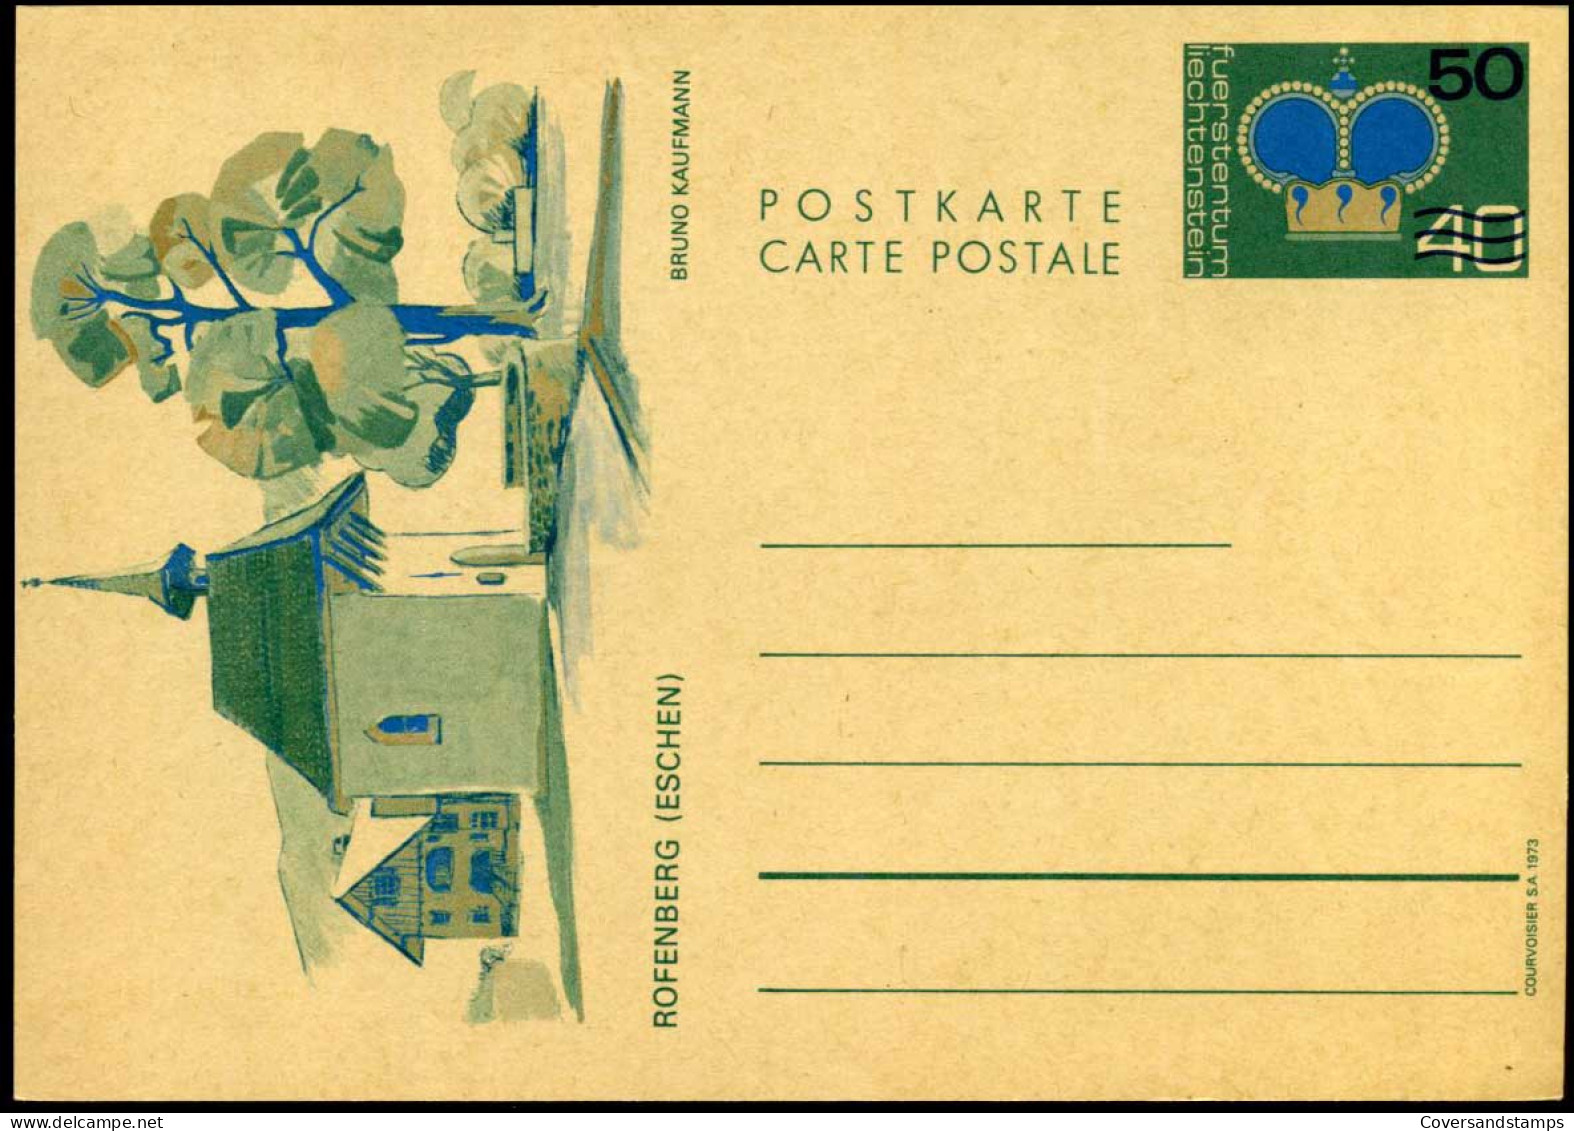 Post Card - Unused - Ganzsachen